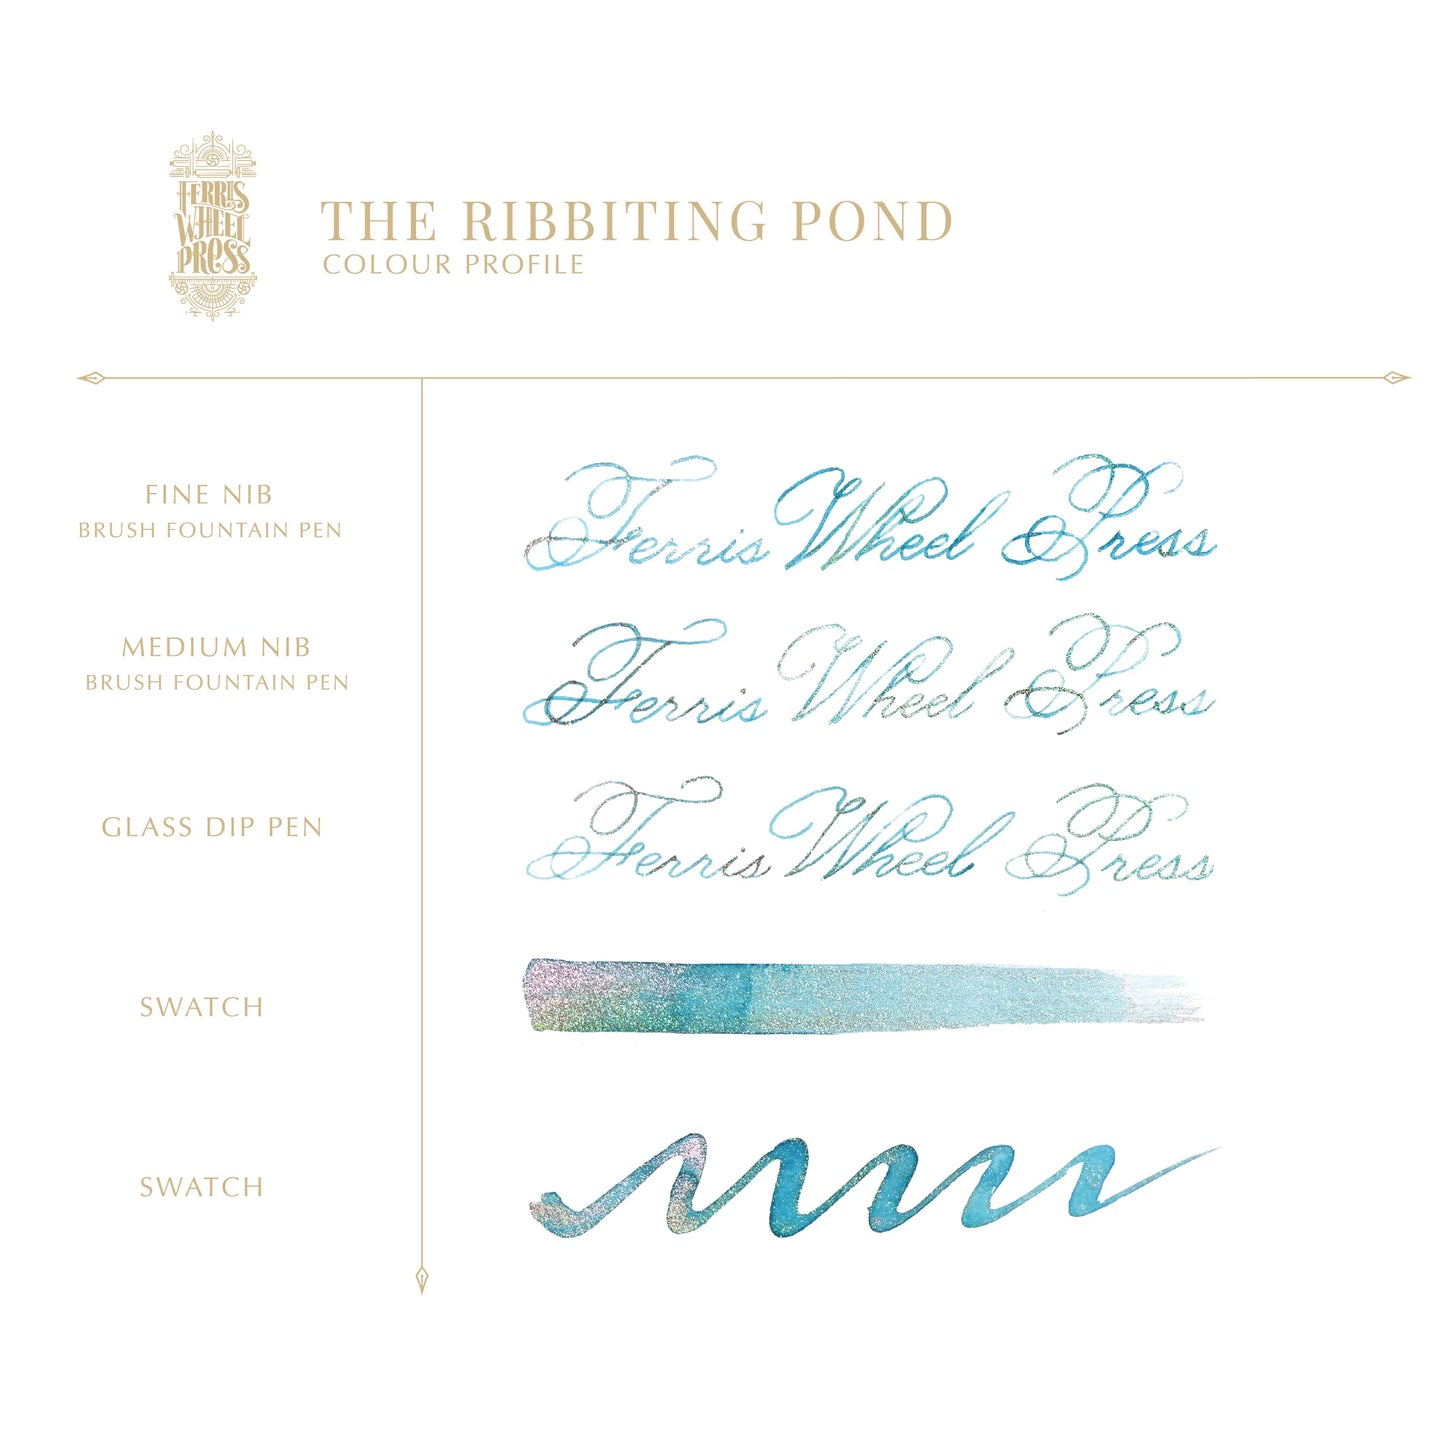 Tinta de 20mL - The Ribbiting Pond (Edición limitada)